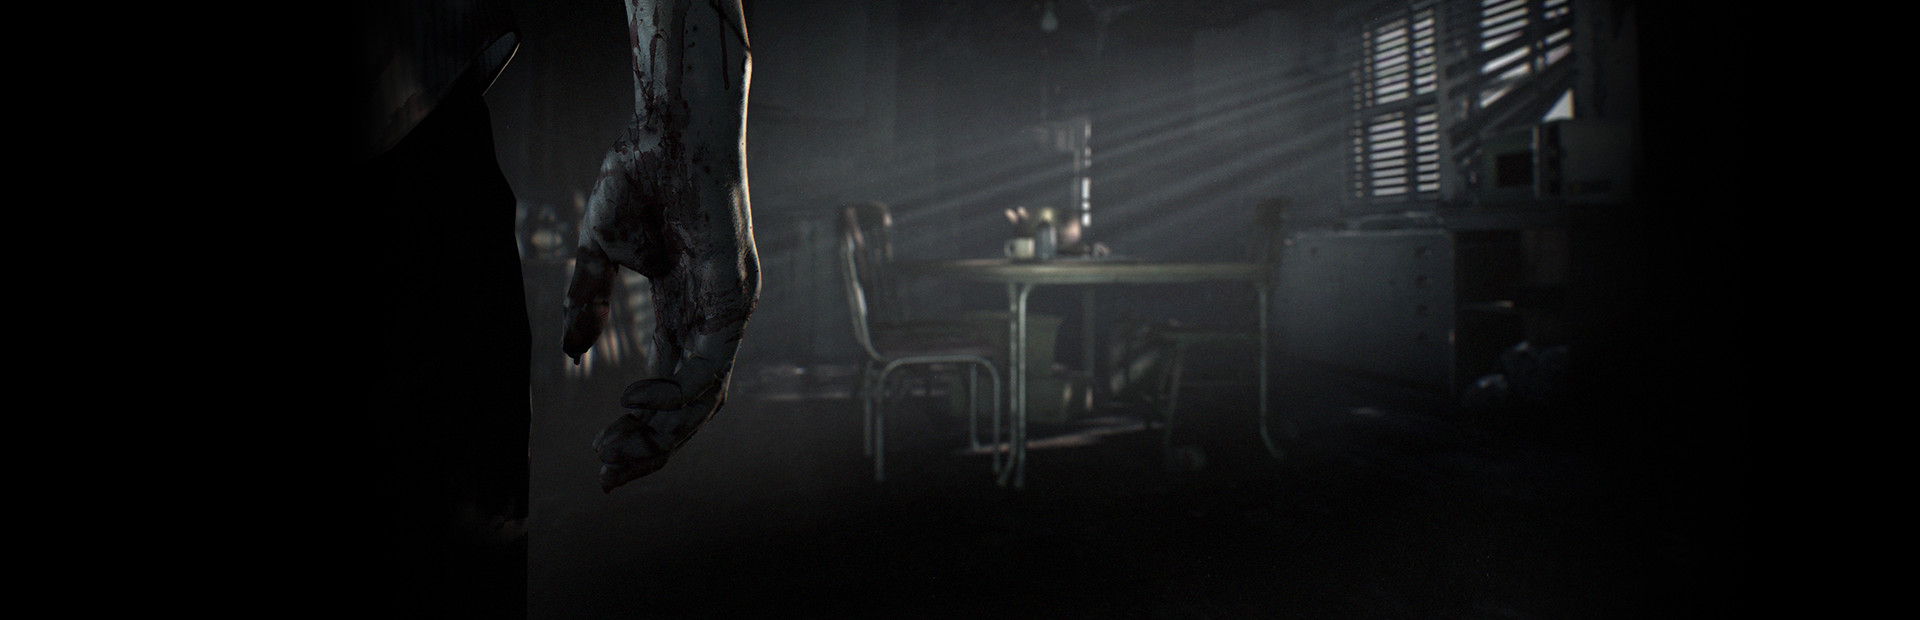 Resident Evil 7 Teaser: Beginning Hour cover image